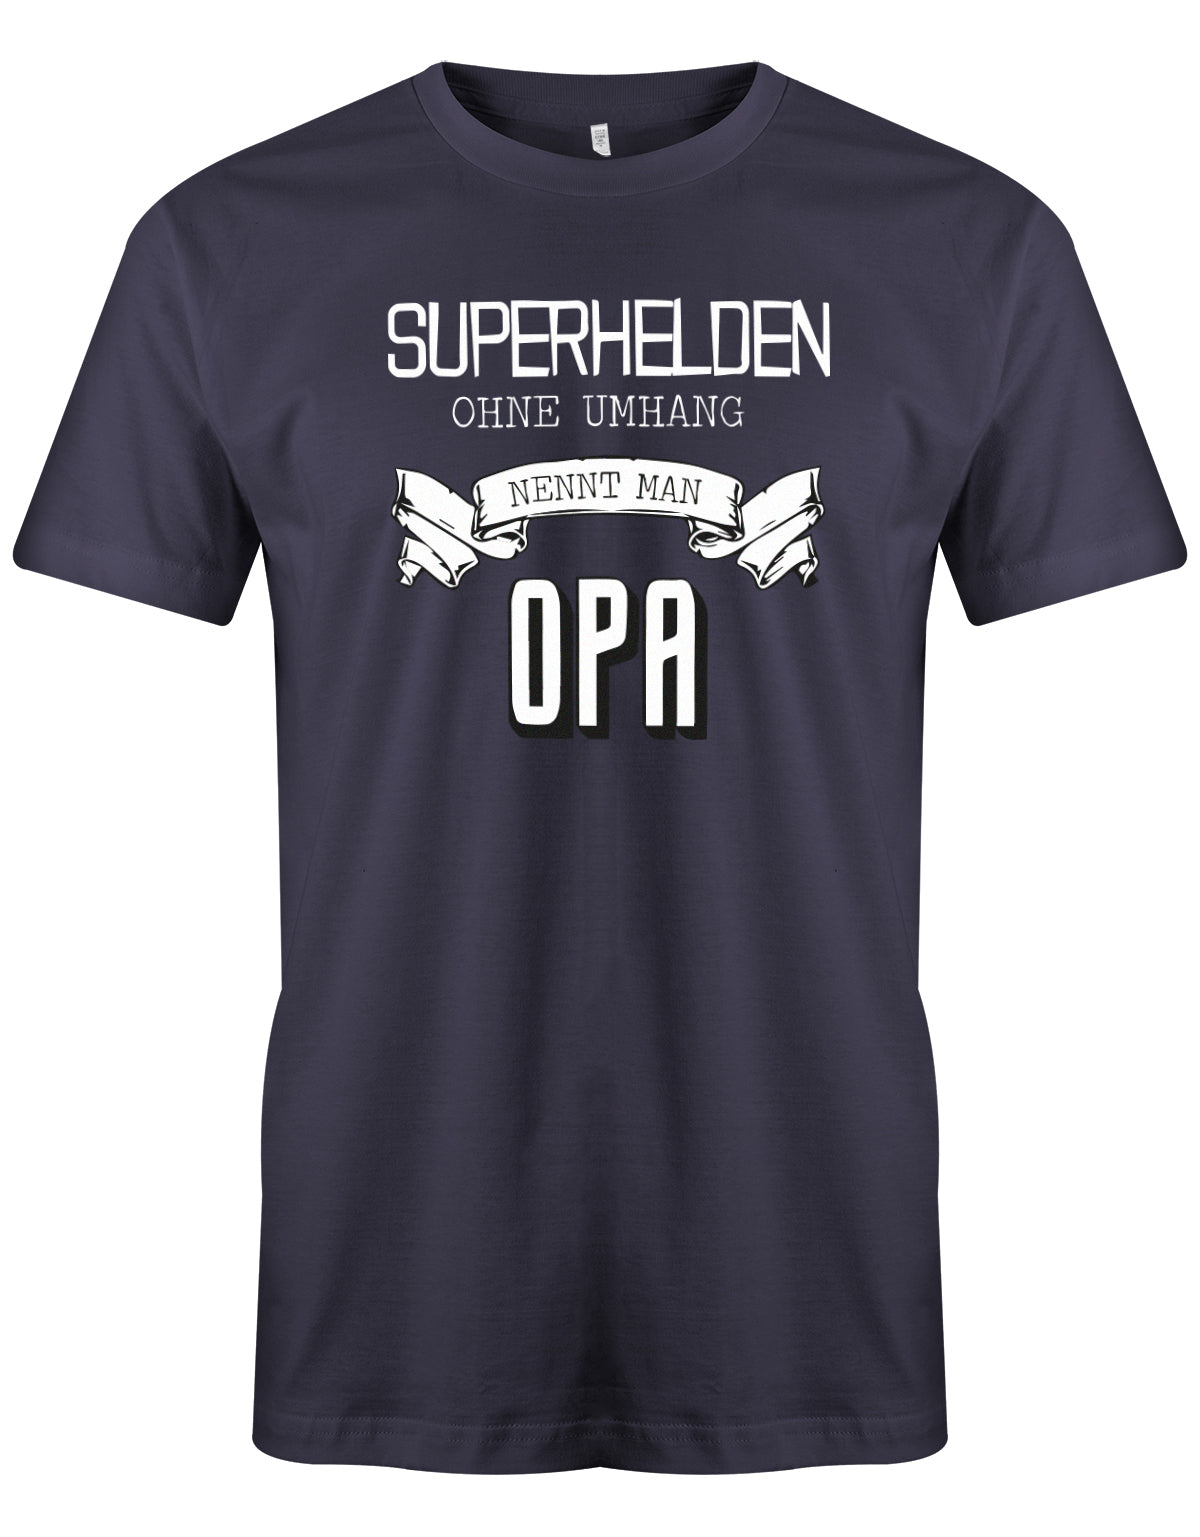 Opa T-Shirt – Superhelden ohne Umhang nennt man Opa Navy